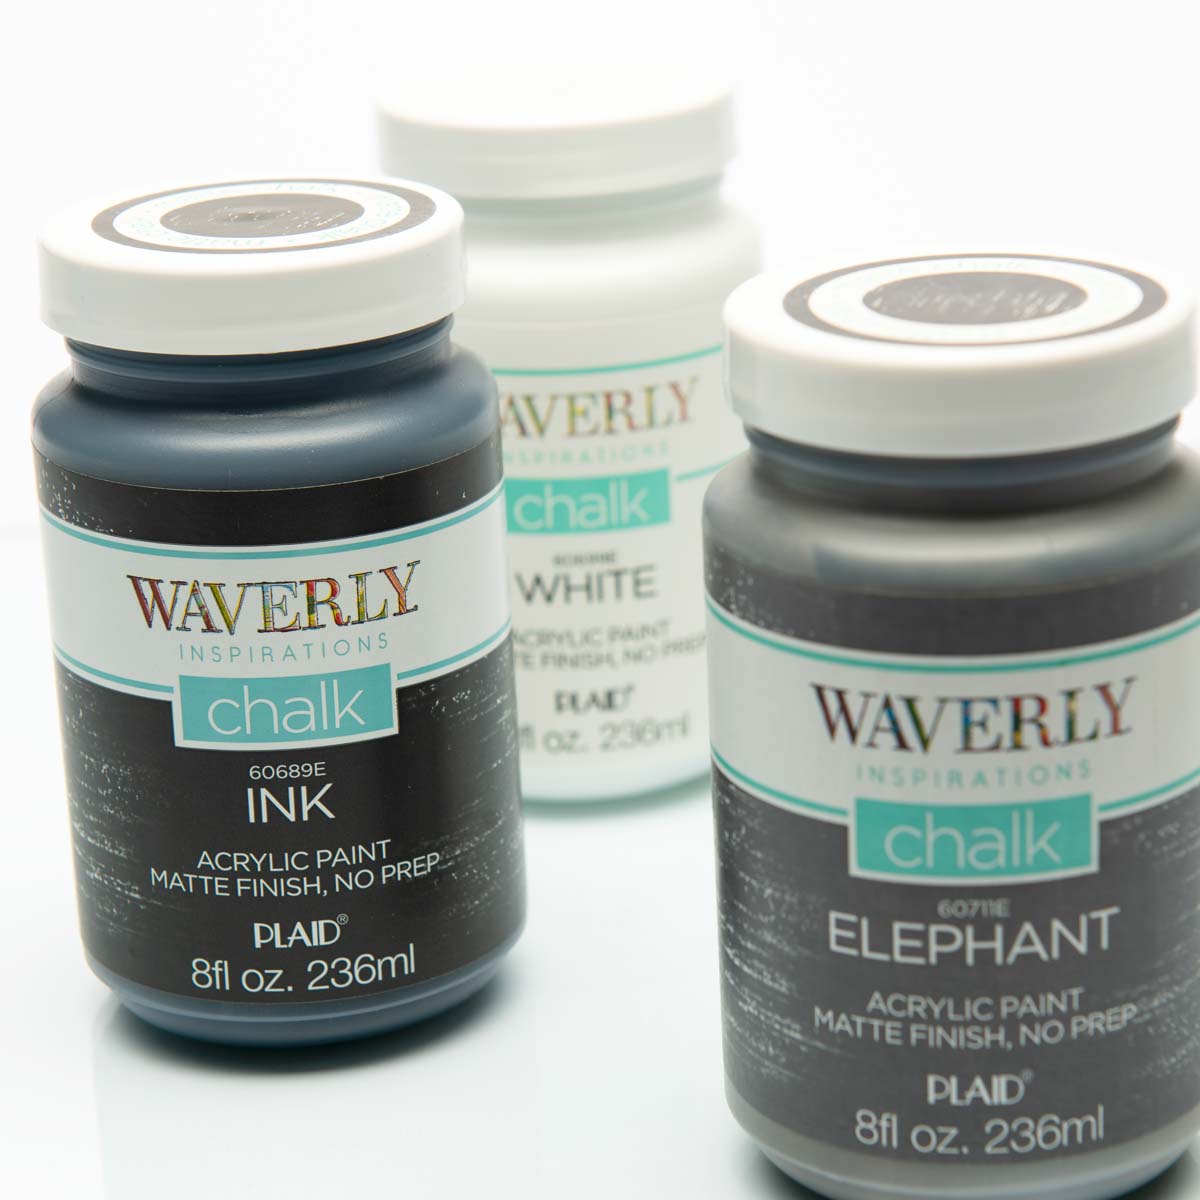 Waverly ® Inspirations Chalk Finish Acrylic Paint Set - White, Elephant, Ink, 3 pc. - 13405